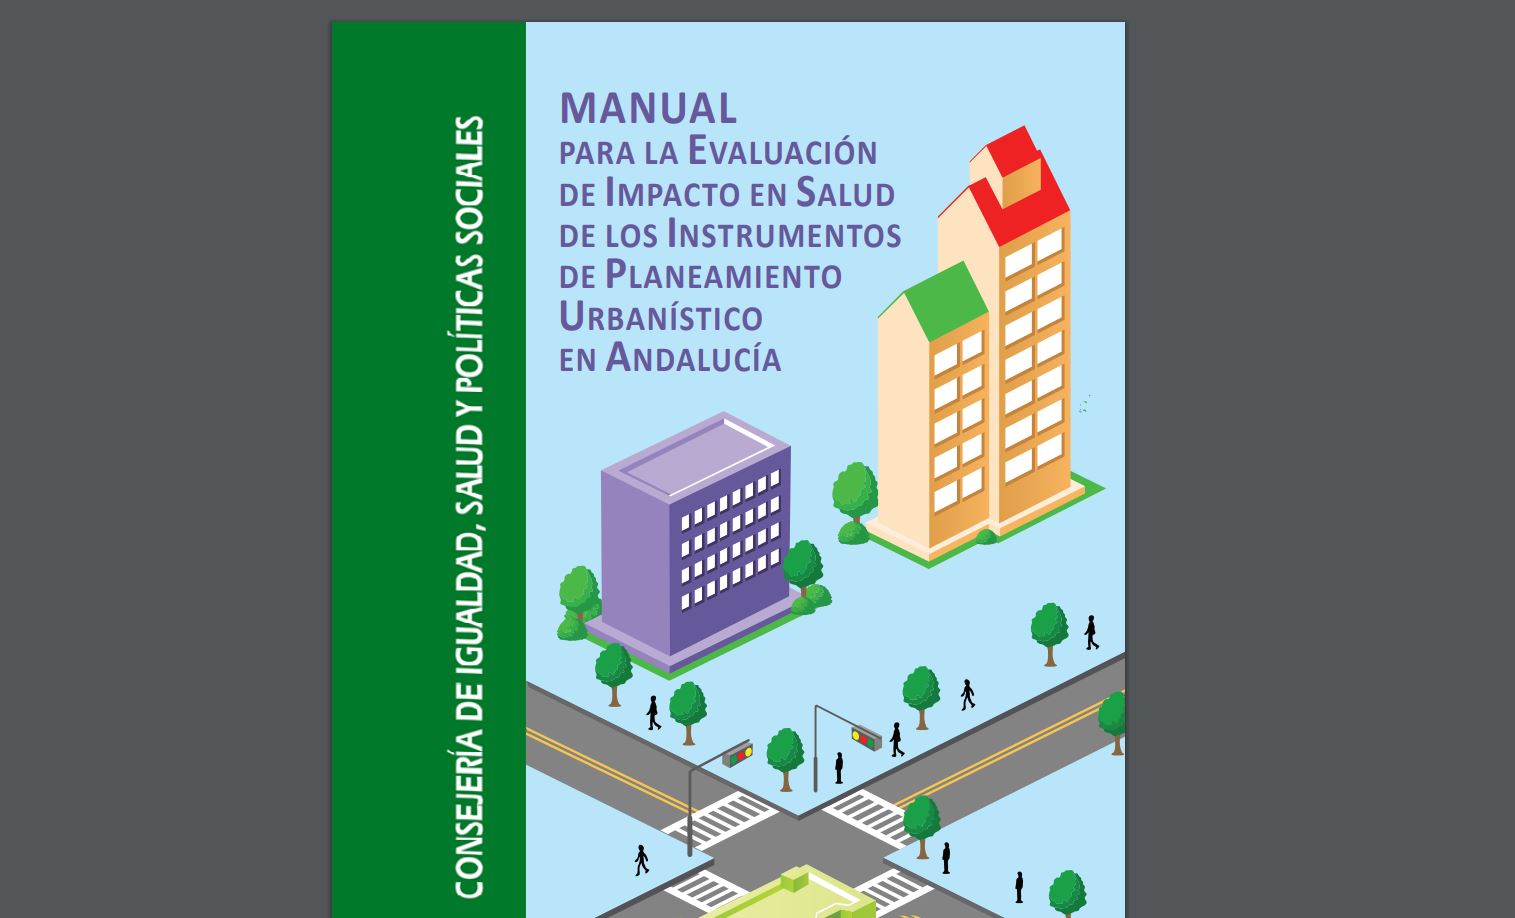 Manual para la Evaluación de Impacto en Salud de los Instrumentos de Planeamiento Urbanístico en Andalucía